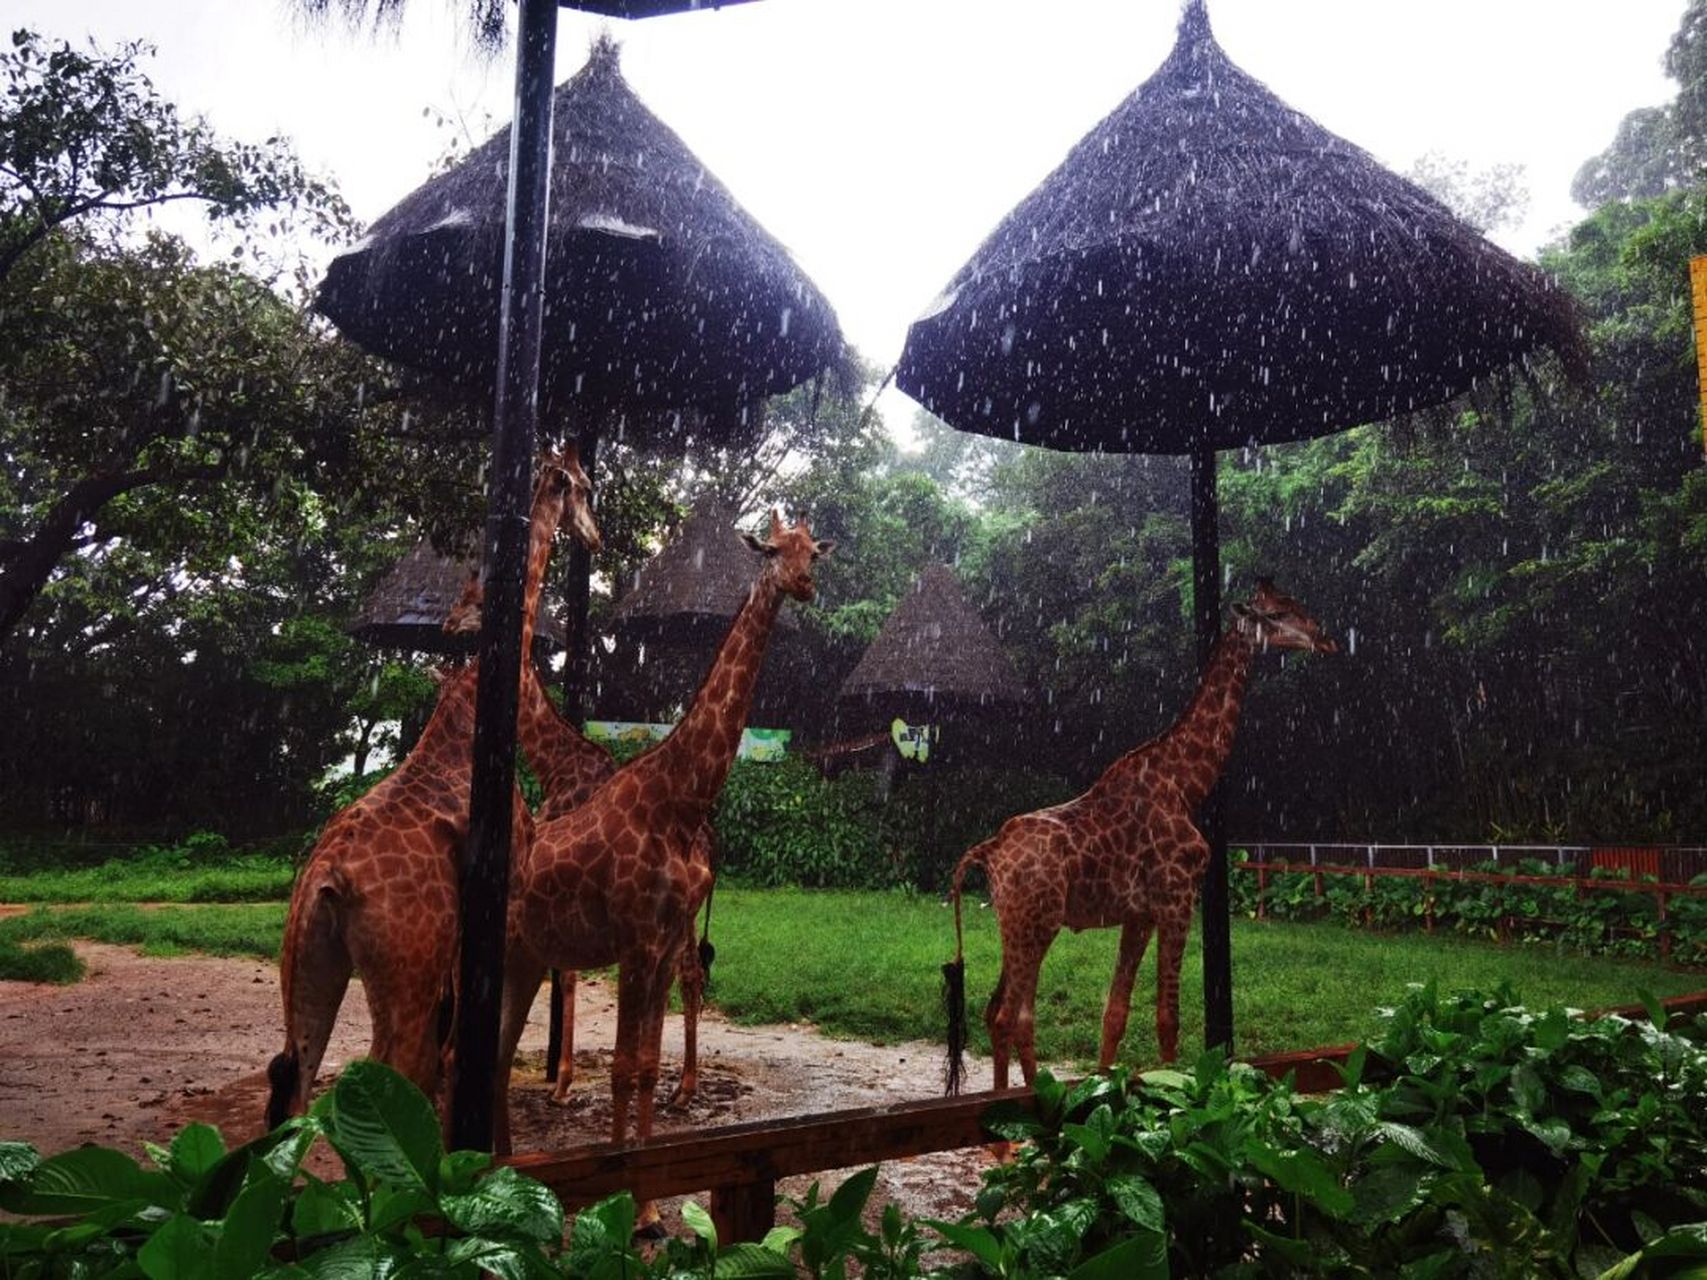 下雨天去广州长隆野生动物园 1909090雨天逛,也非常不错呢!